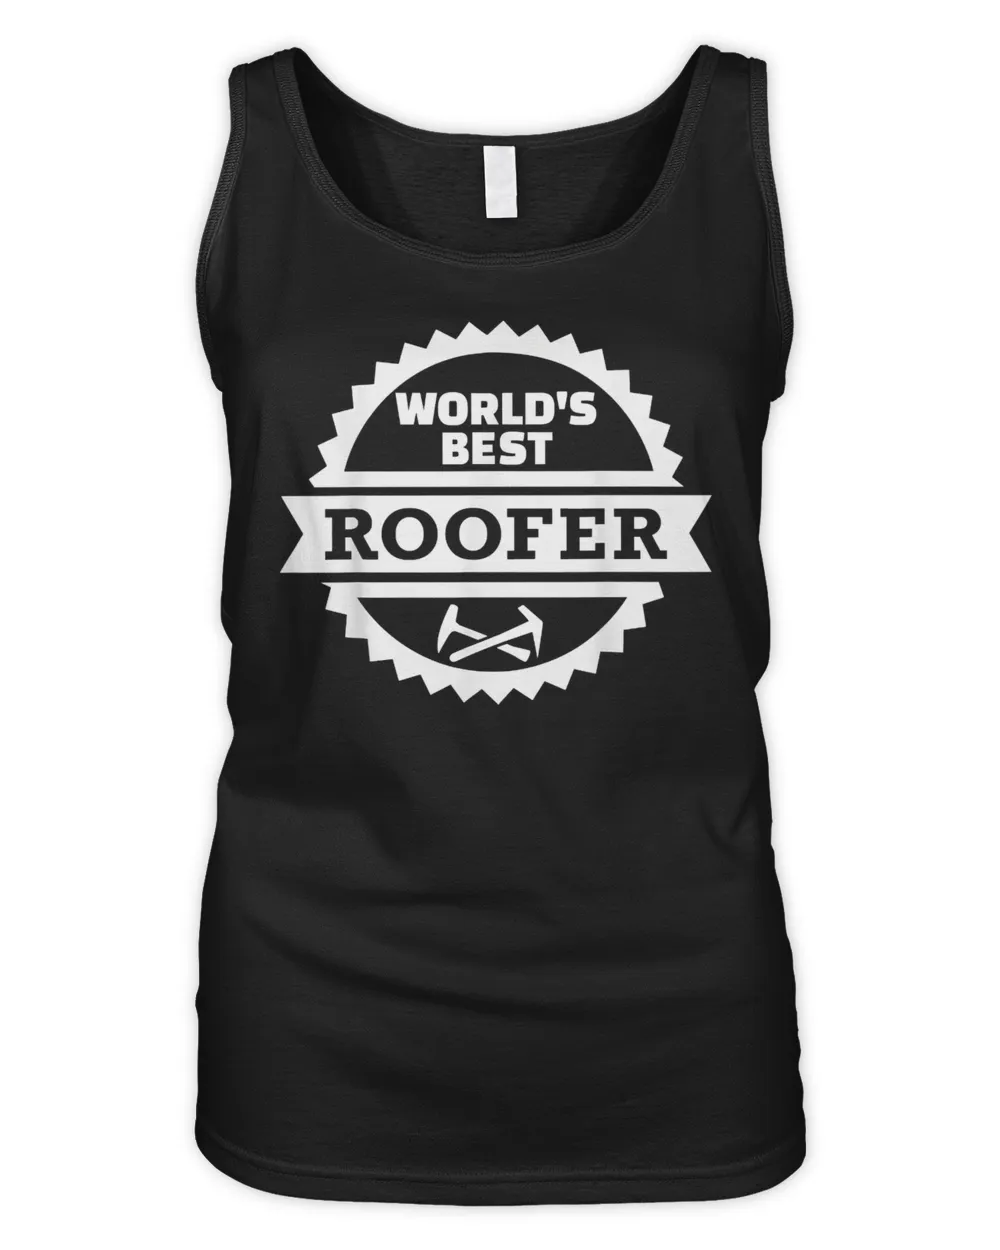 World's best roofer T-Shirt